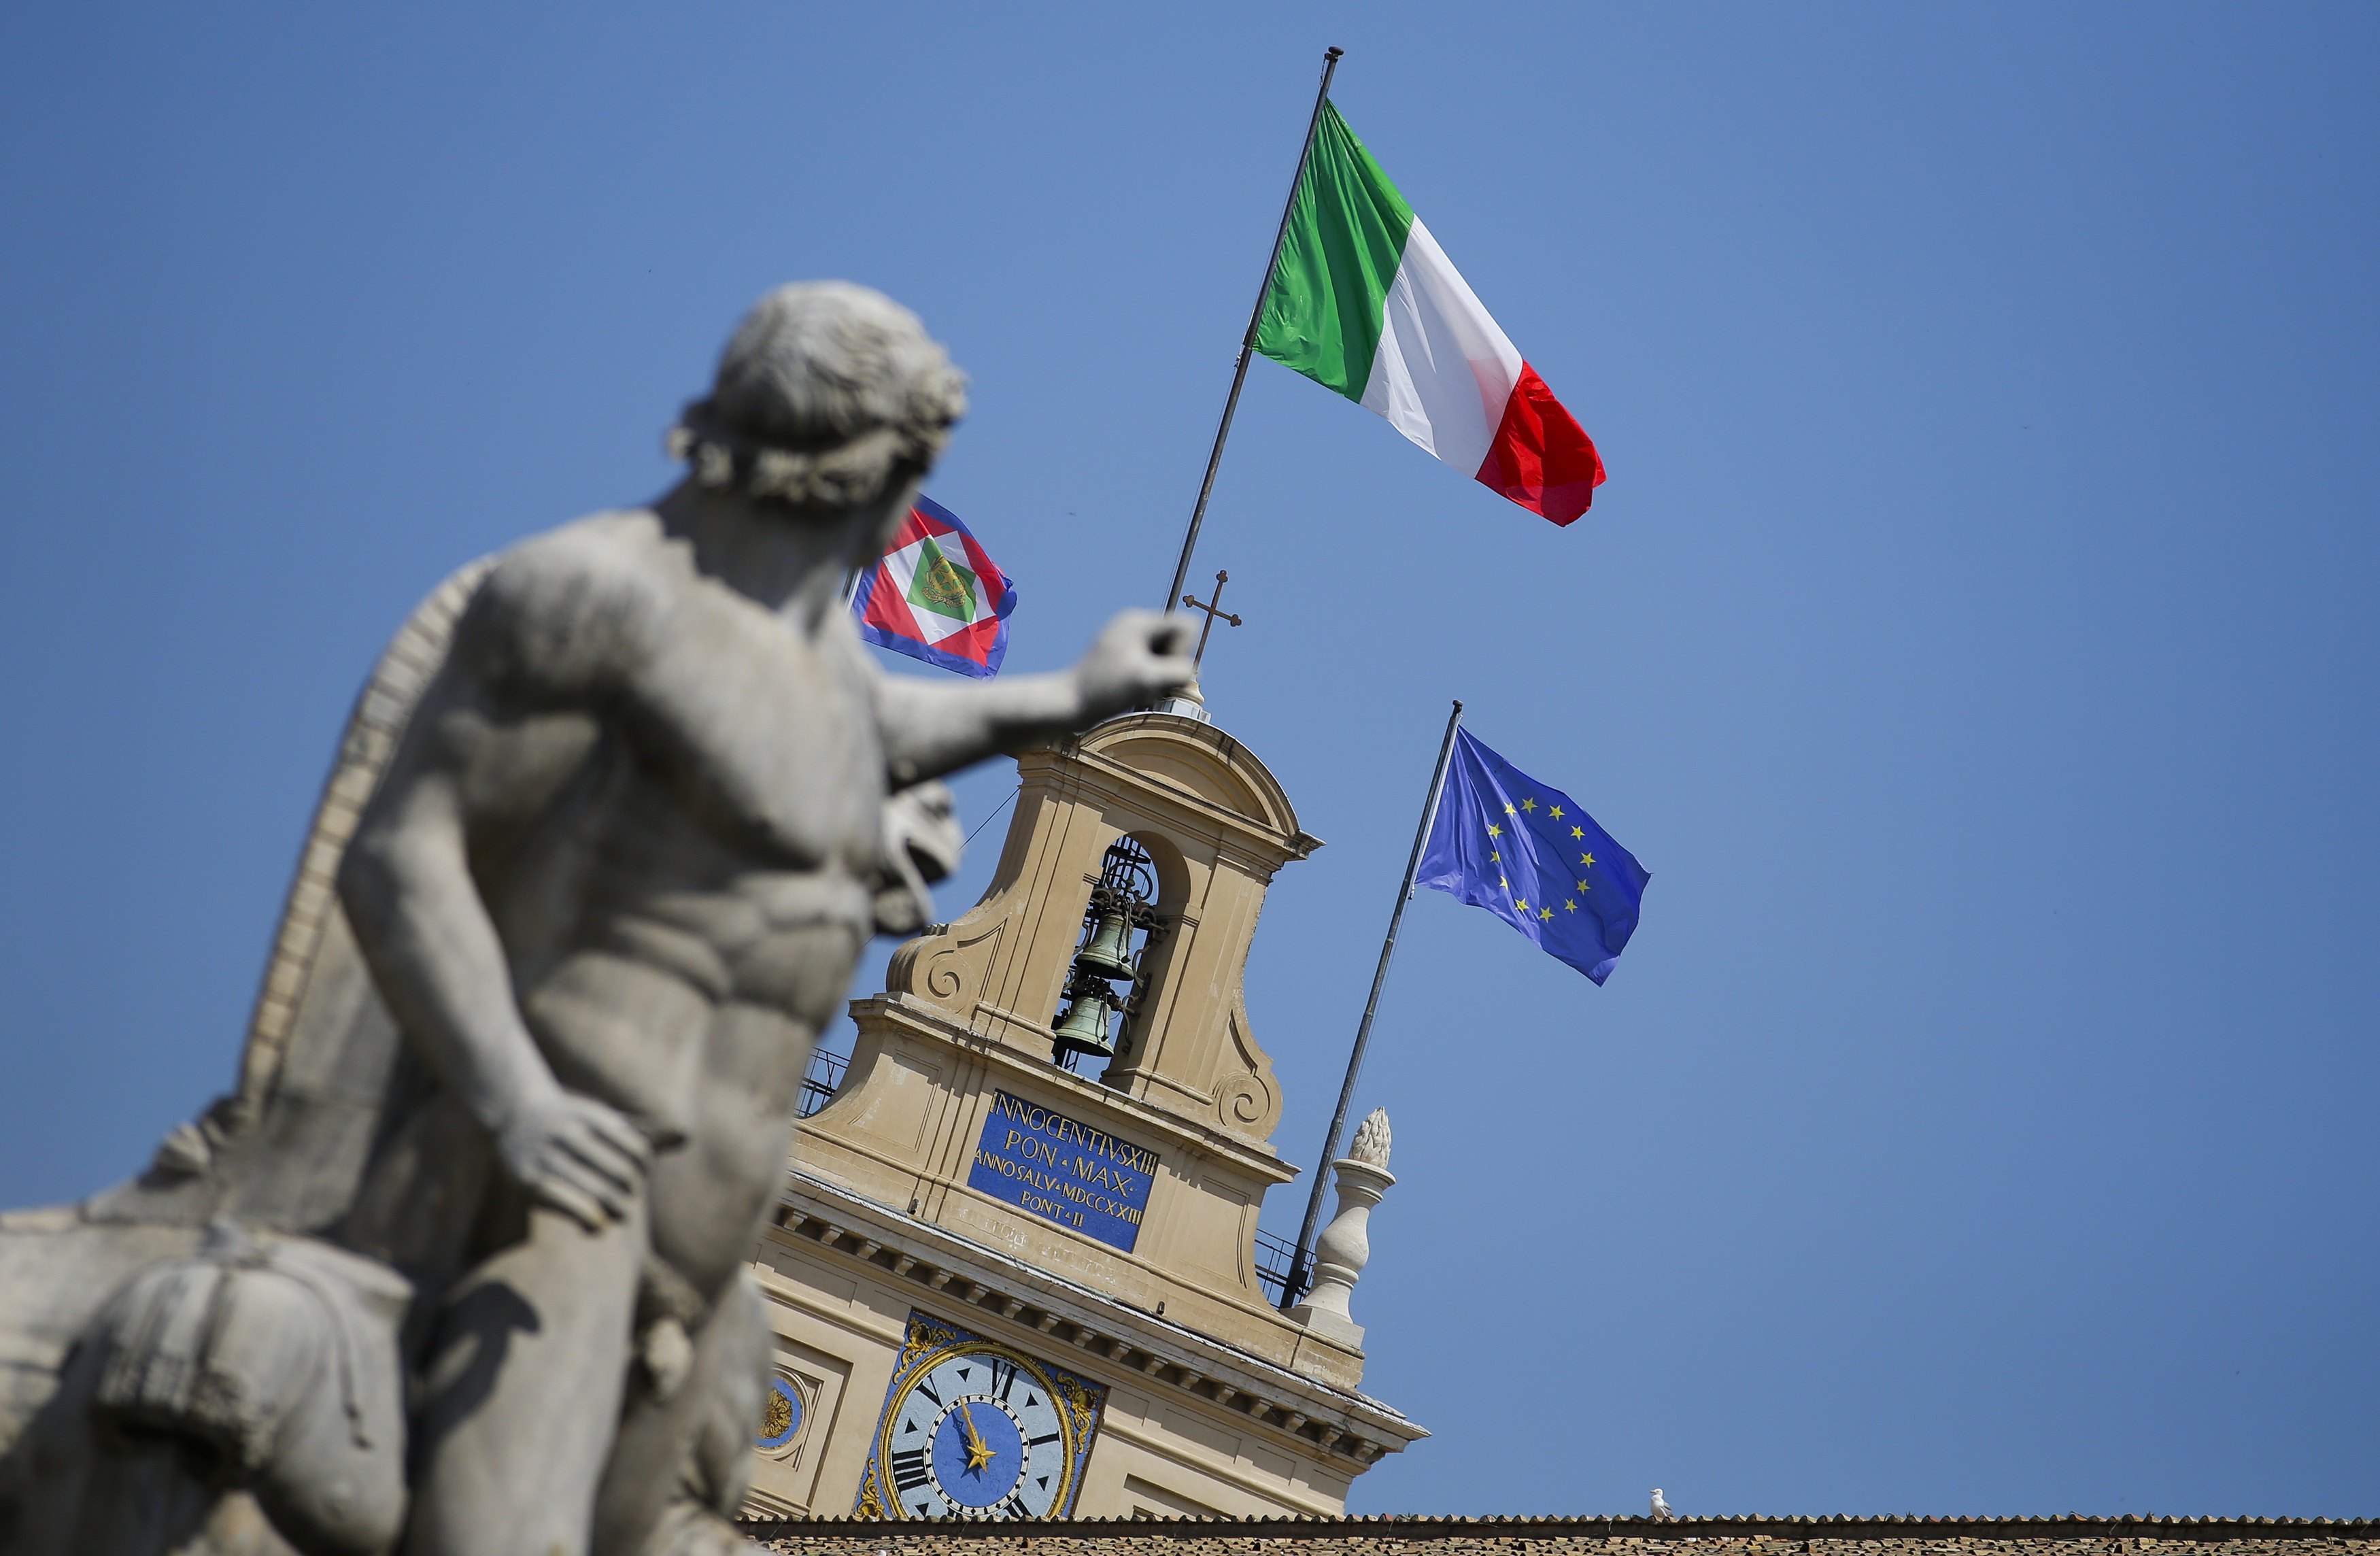 Ιταλία: 4 εκατ. πολίτες ζήτησαν βοήθεια για τροφή το 2013